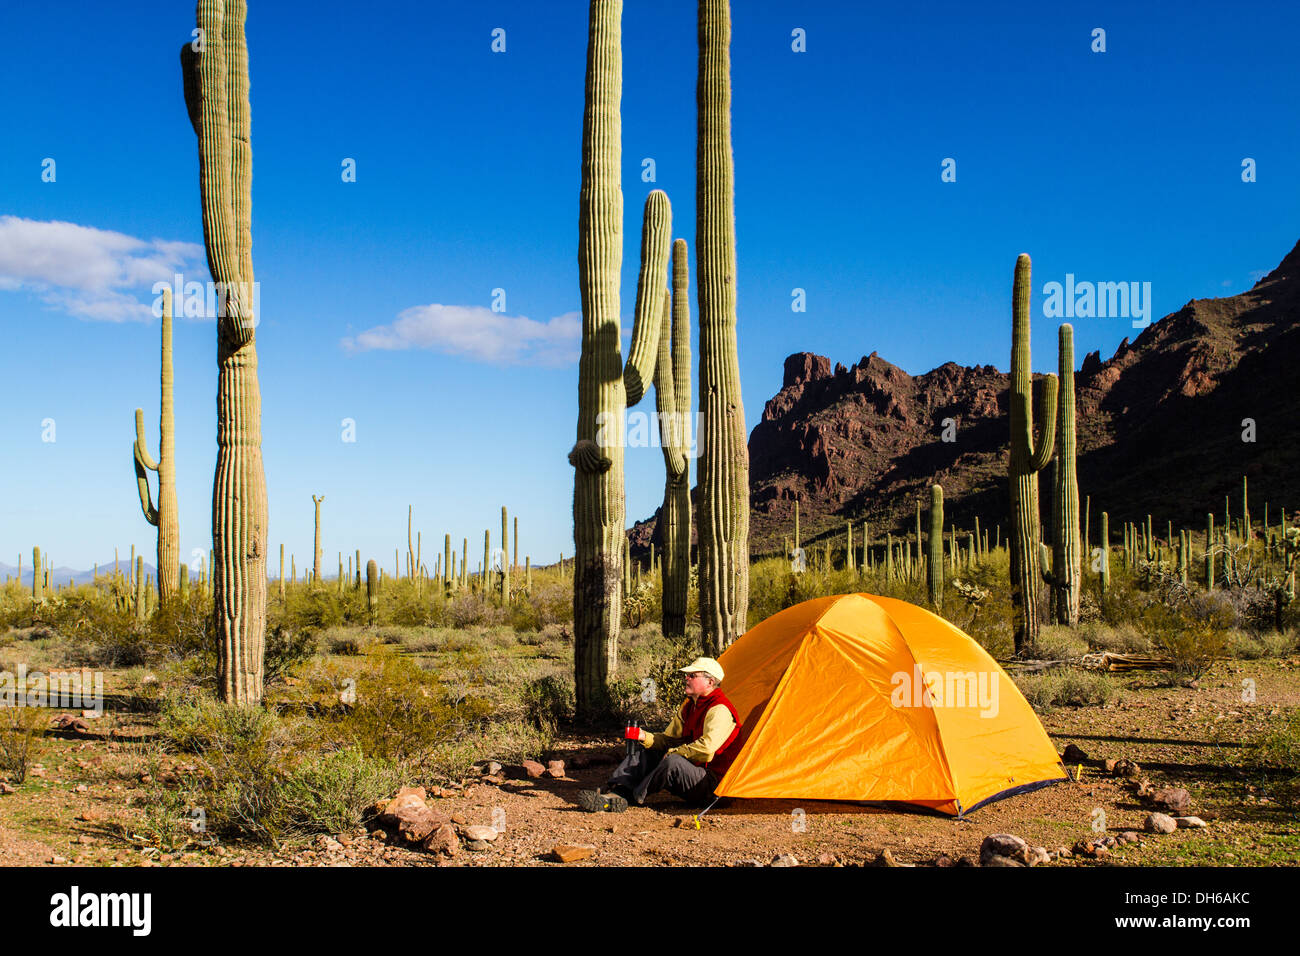 Un homme est assis à l'extérieur d'une tente avec une tasse. Saguaro cactus en arrière-plan. Tuyau d'orgue Cactus National Monument, Arizona Banque D'Images